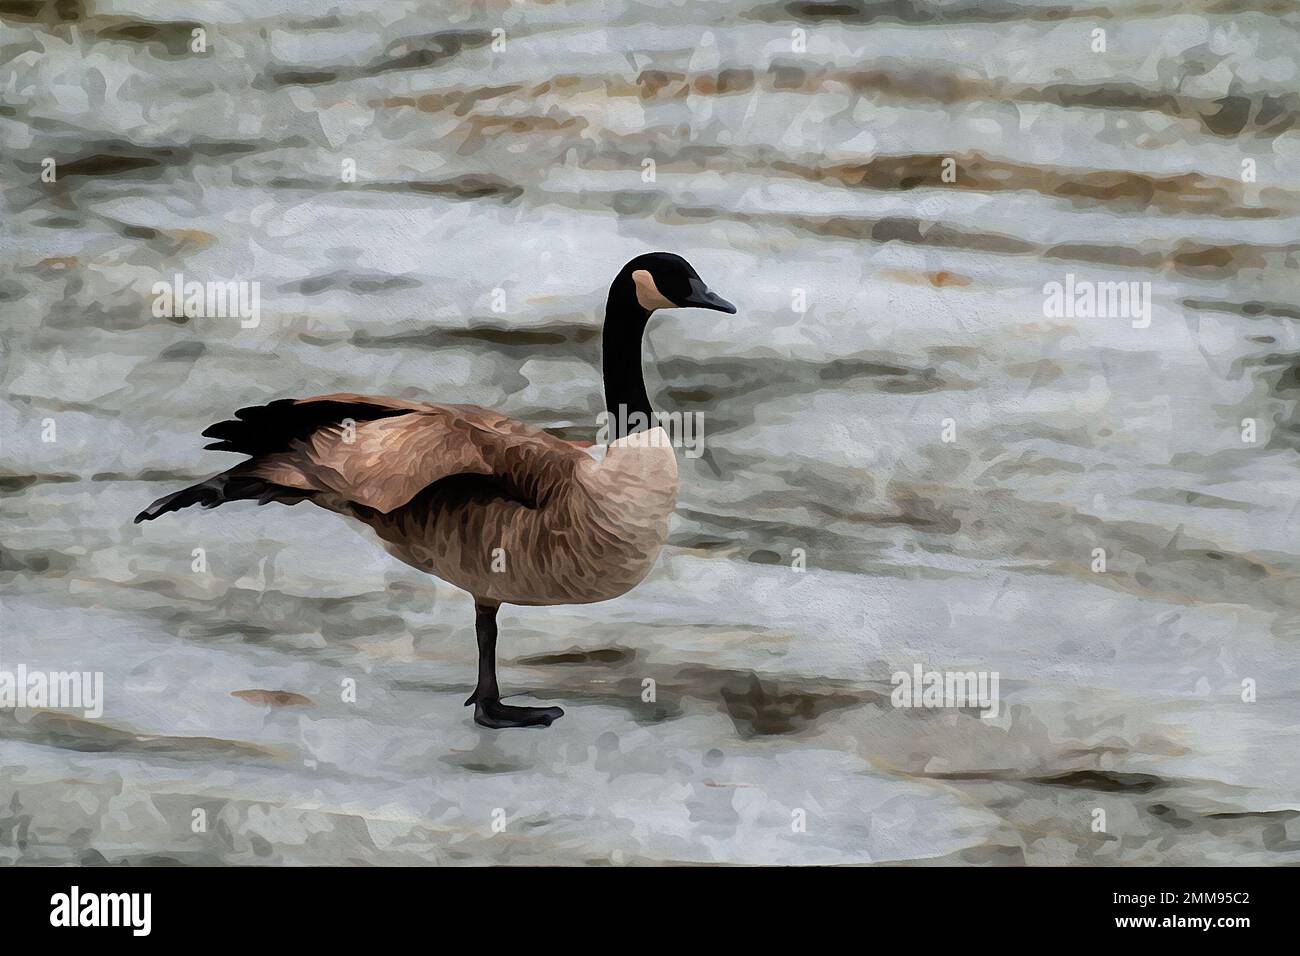 Peinture à l'aquarelle créée numériquement de l'oie du Canada branta canadensis en équilibre sur une jambe d'un lac gelé Banque D'Images